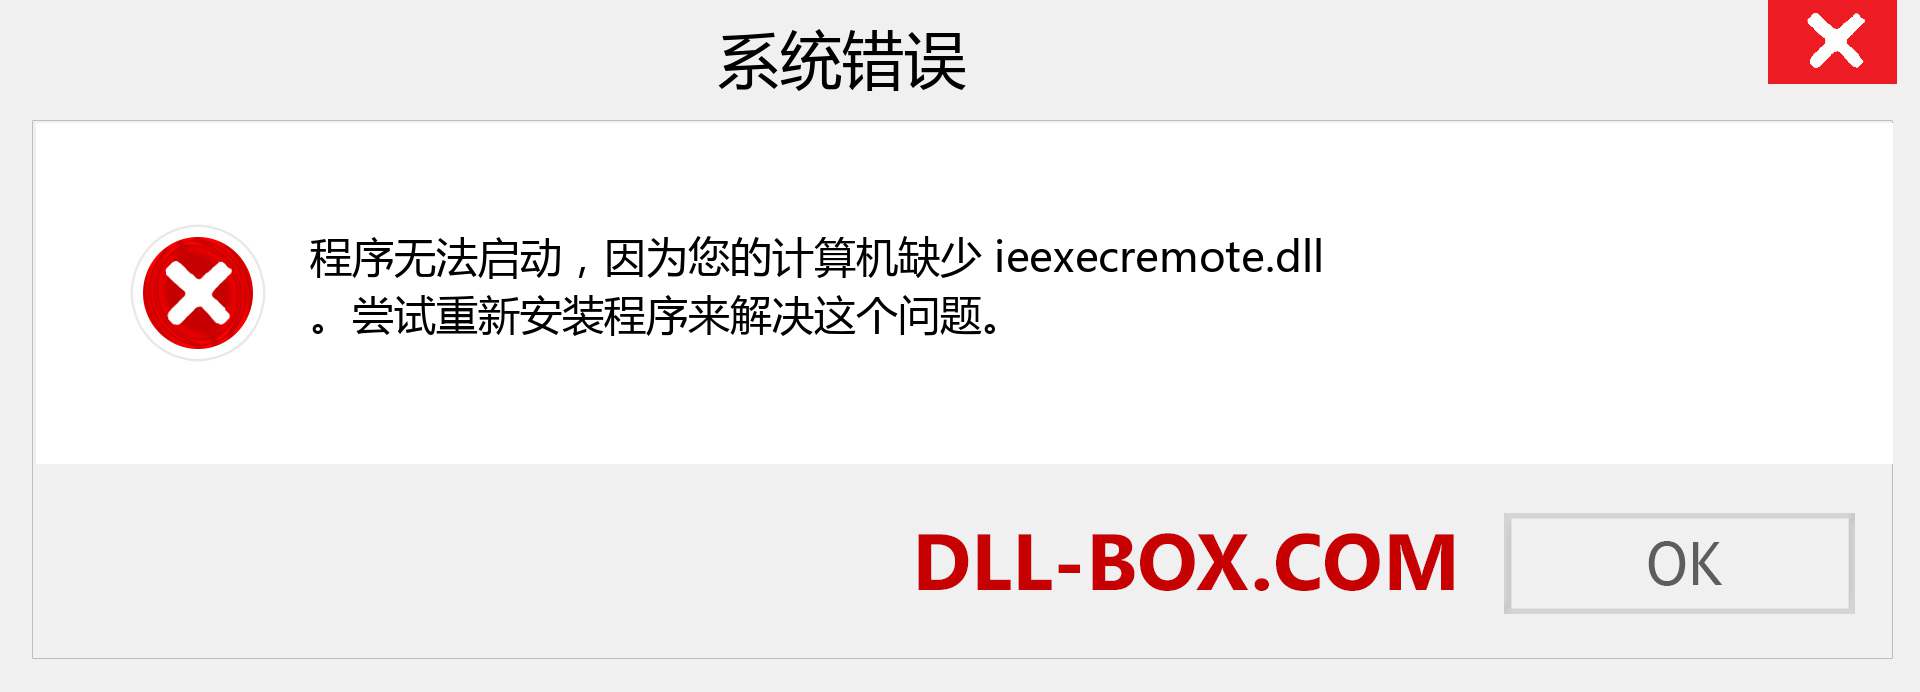 ieexecremote.dll 文件丢失？。 适用于 Windows 7、8、10 的下载 - 修复 Windows、照片、图像上的 ieexecremote dll 丢失错误